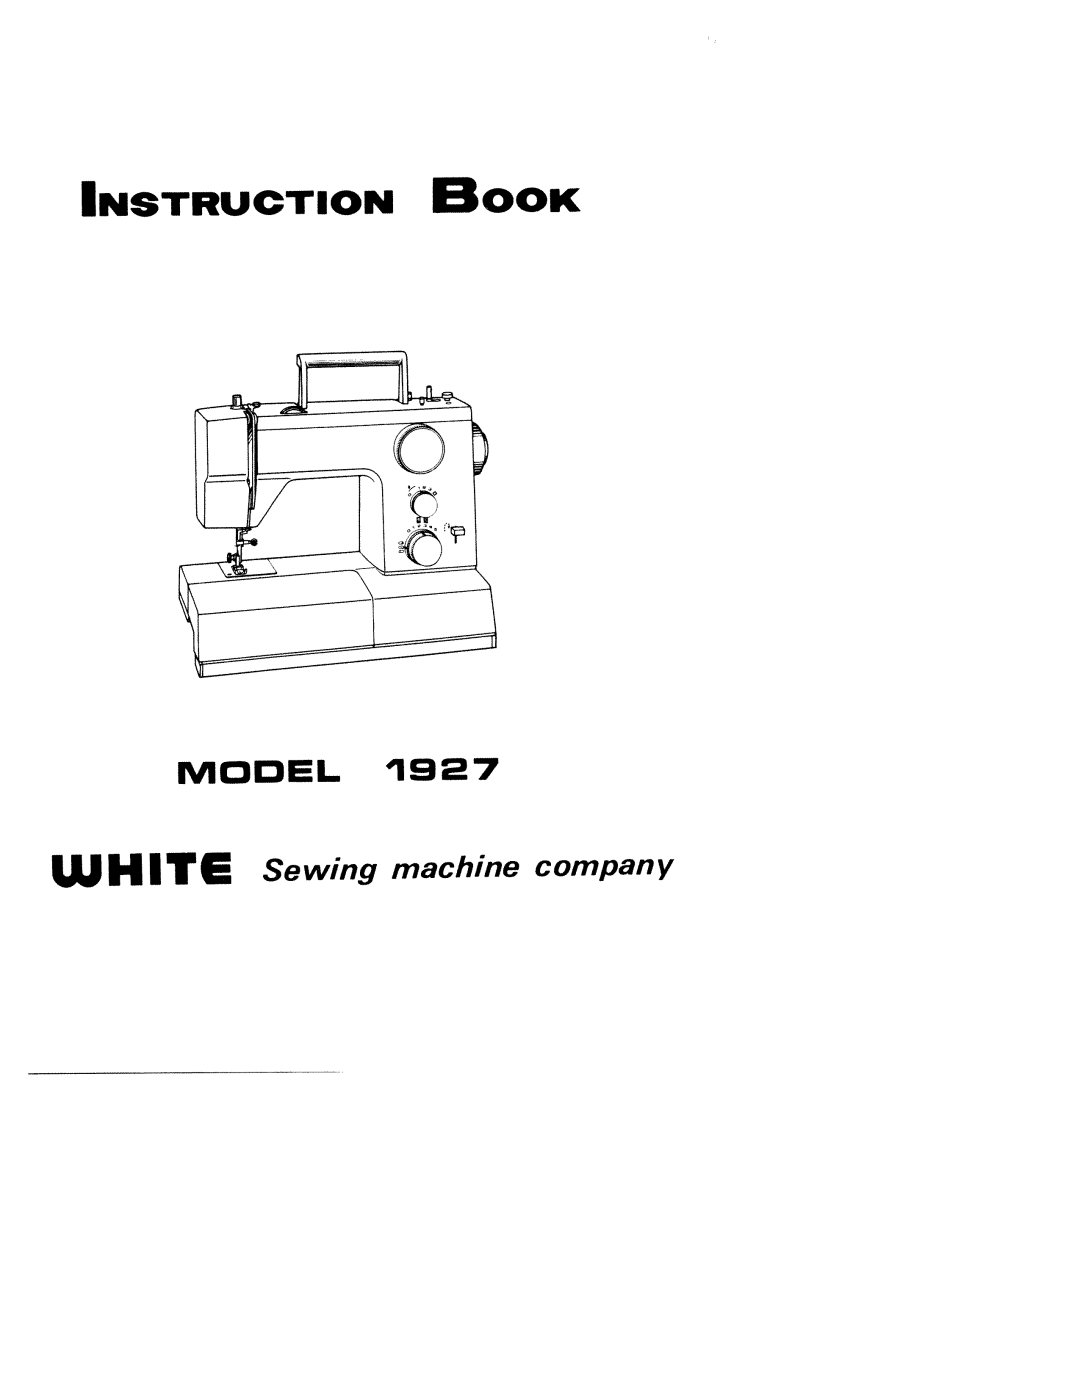 White 1927 manual 